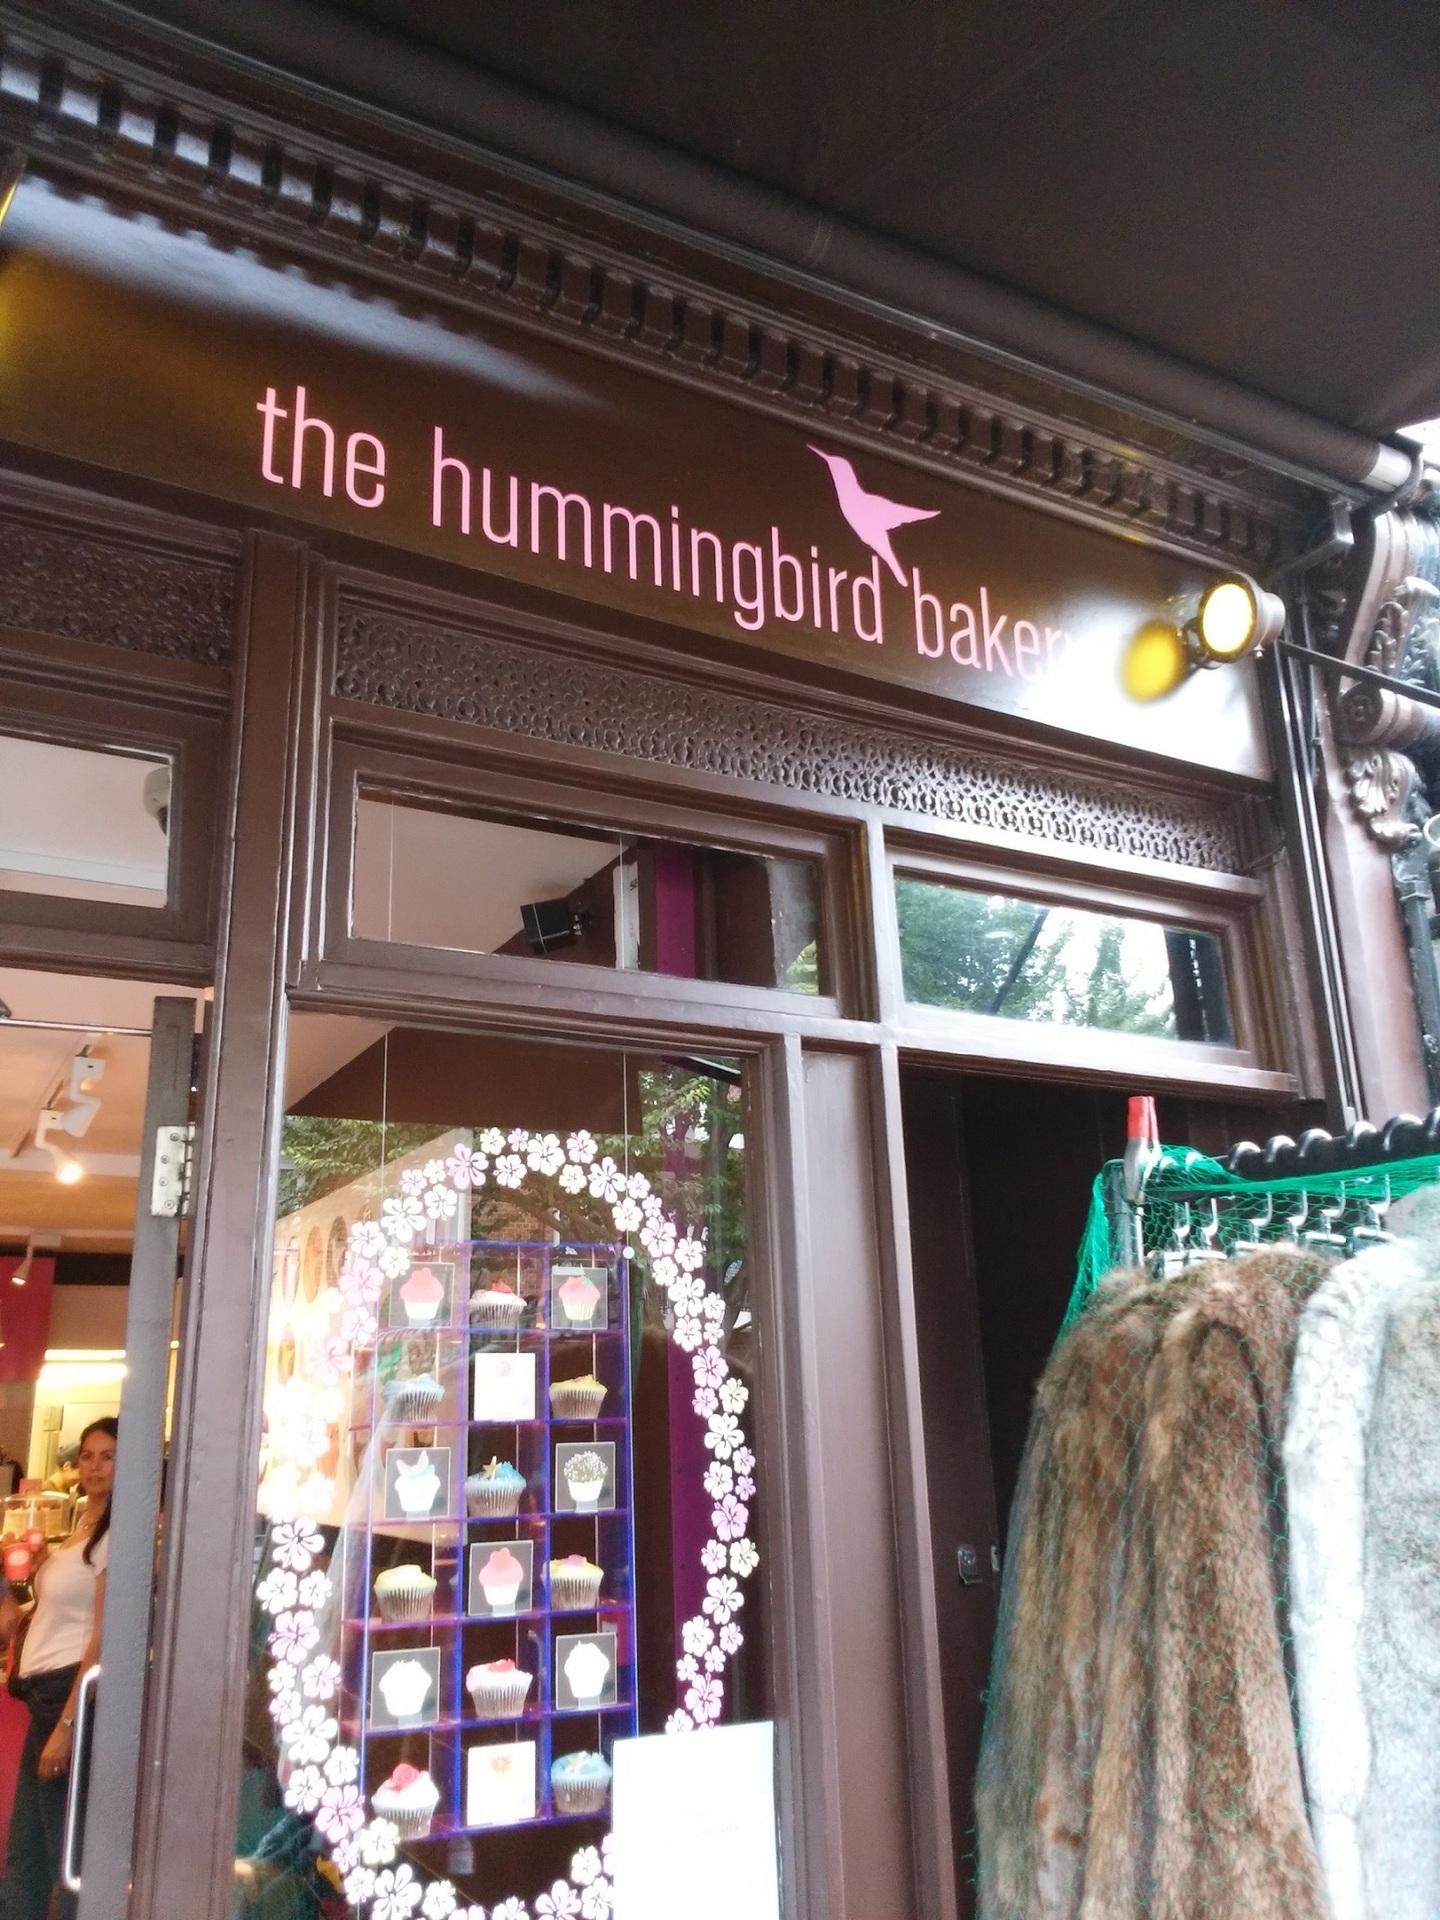 映画でも有名なノッティング ヒル発のカップケーキ屋さん Hummingbird Bakery ハミングバード ベーカリー イギリスの料理はまずいと誰が言った